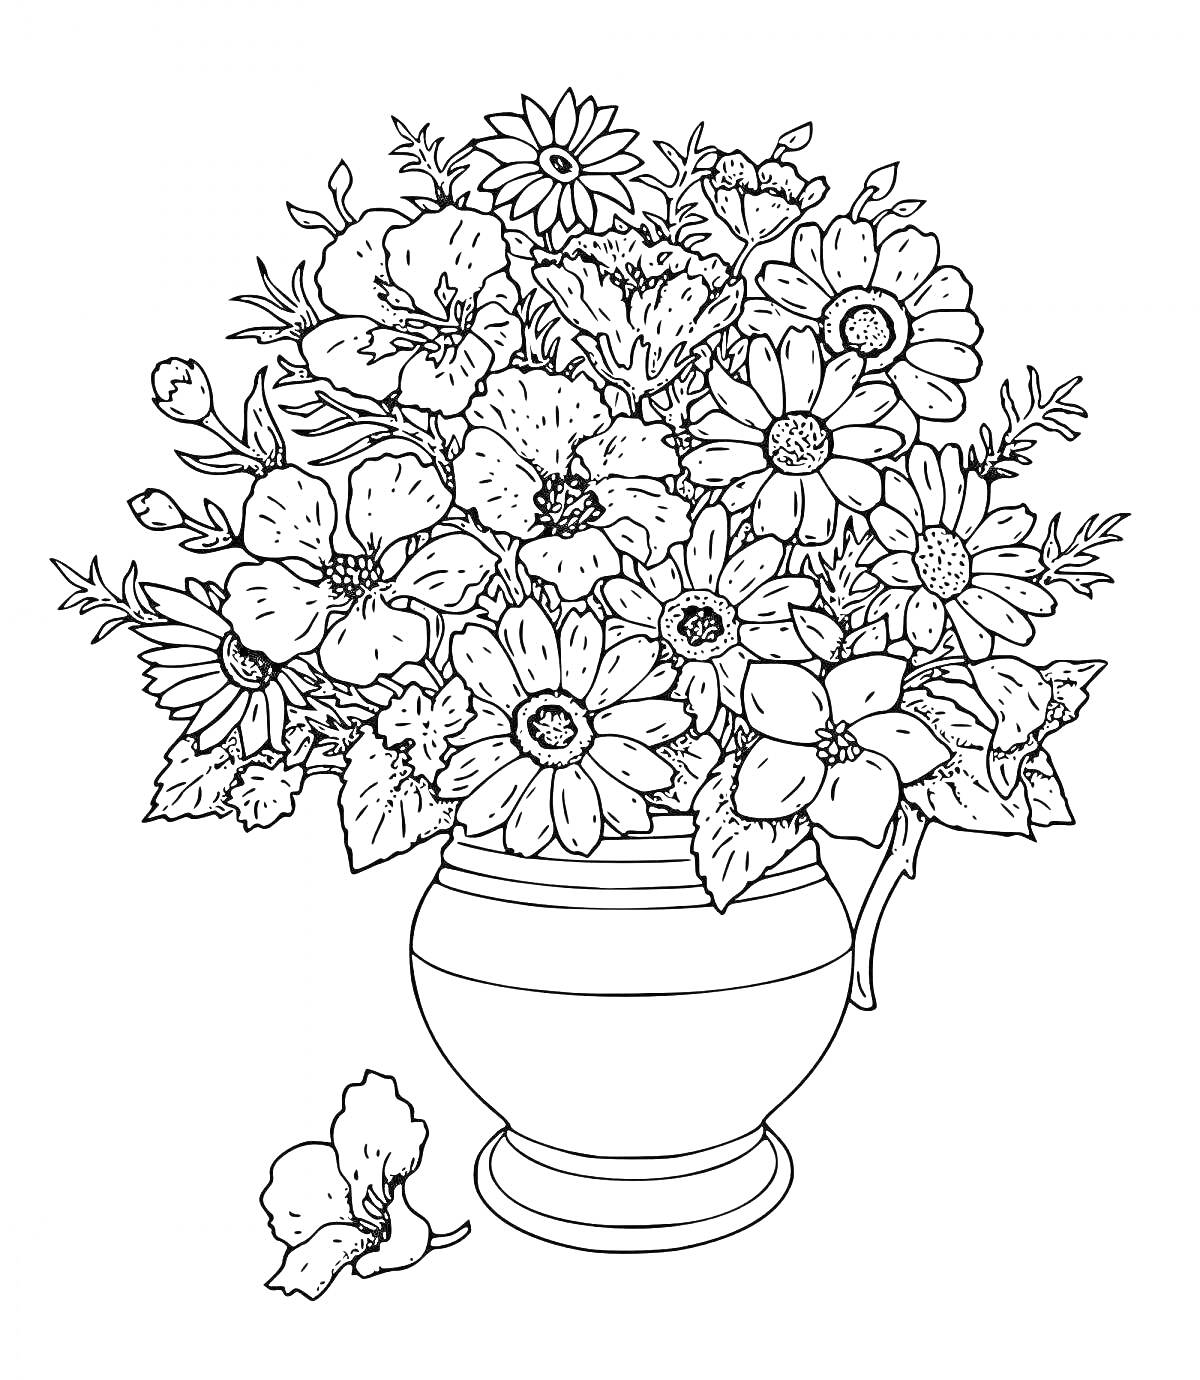 На раскраске изображено: Цветы, Ваза, Крупные цветы, Цветы в вазе, Для детей, Для взрослых, Антистресс